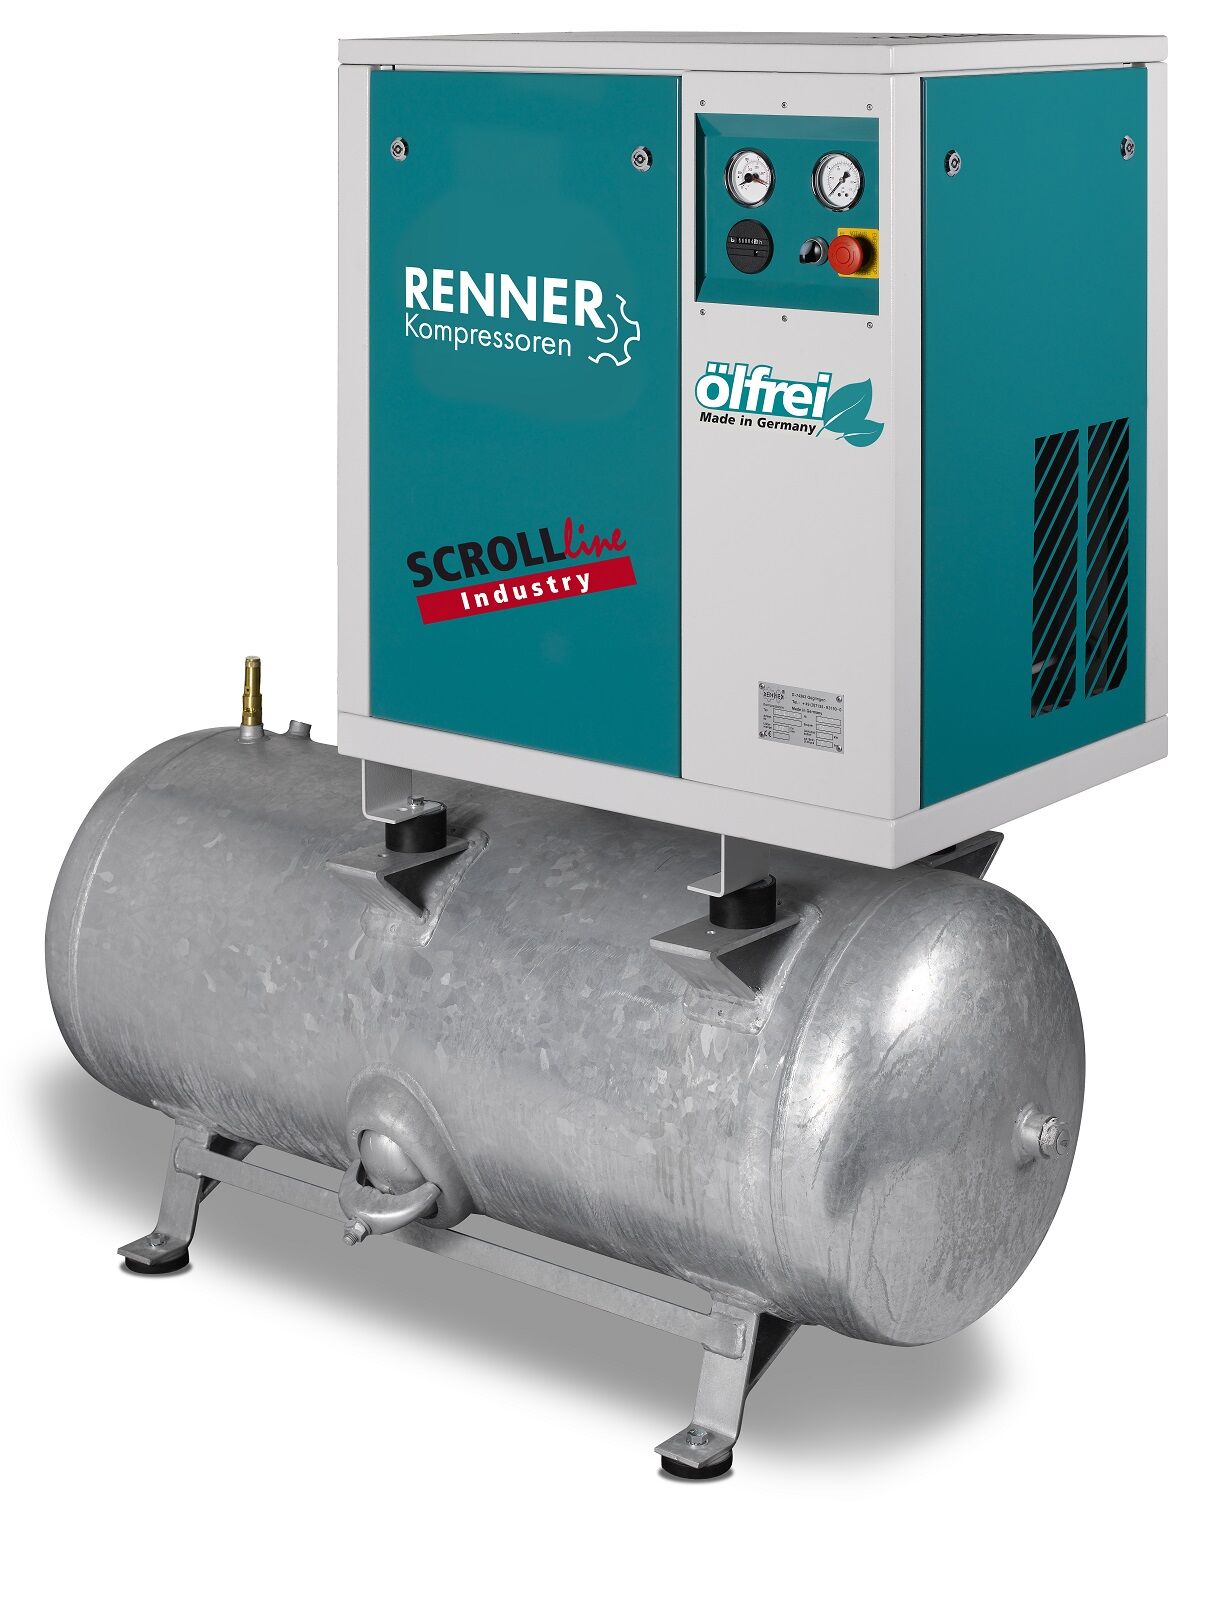 RENNER-Kompressor SLD-I 2,2 auf 90 Liter Druckbehälter - Industry ölfreier Scrollkompressor